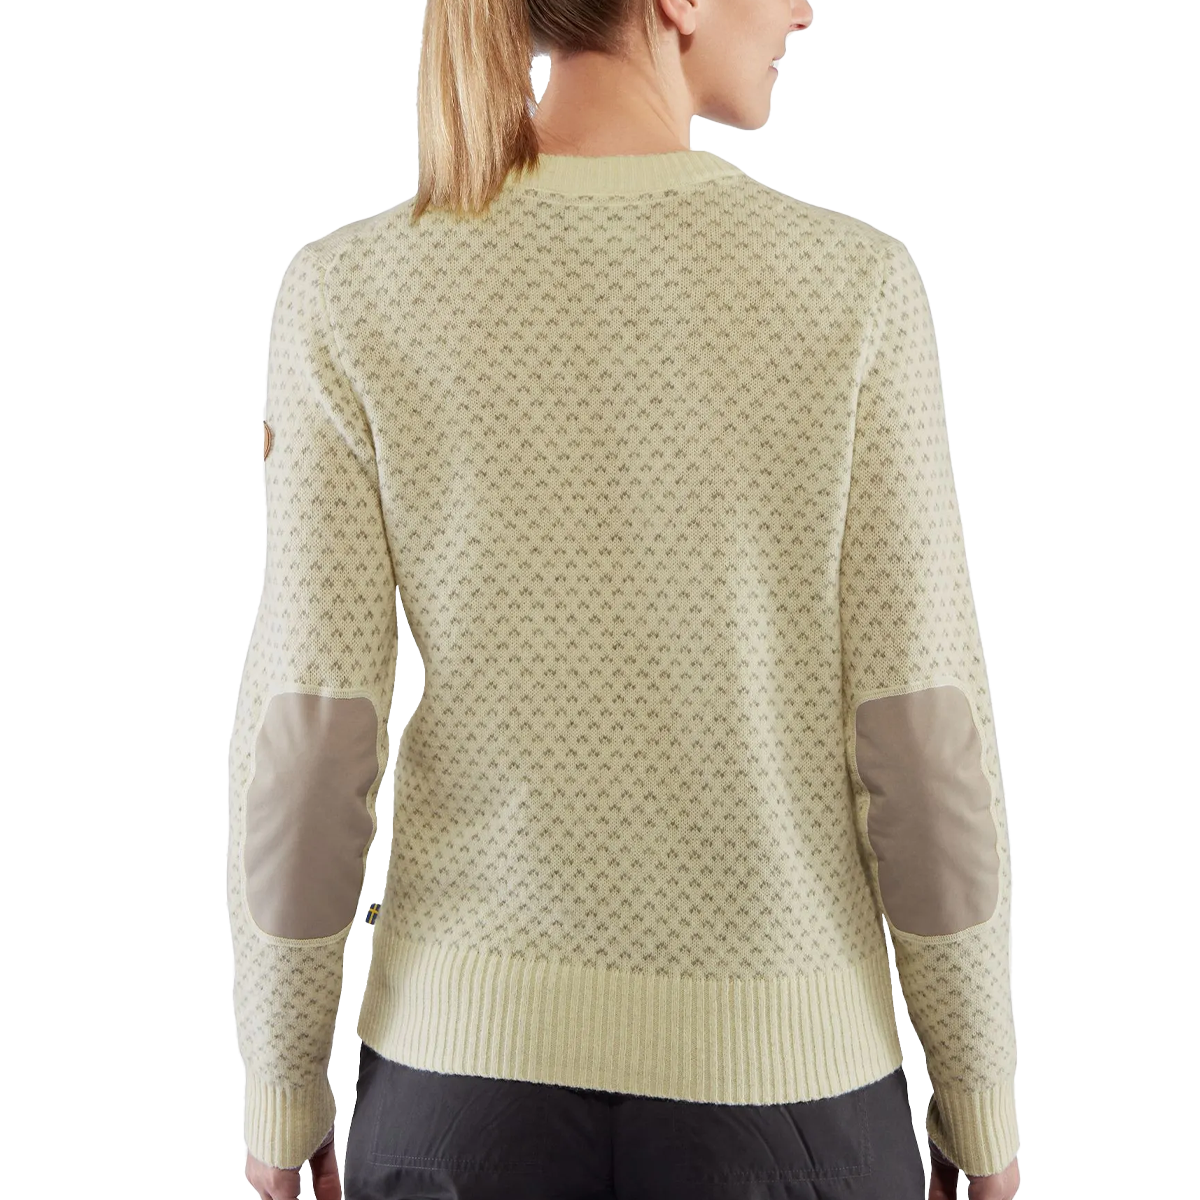 Women's Ovik Nordic Sweater alternate view